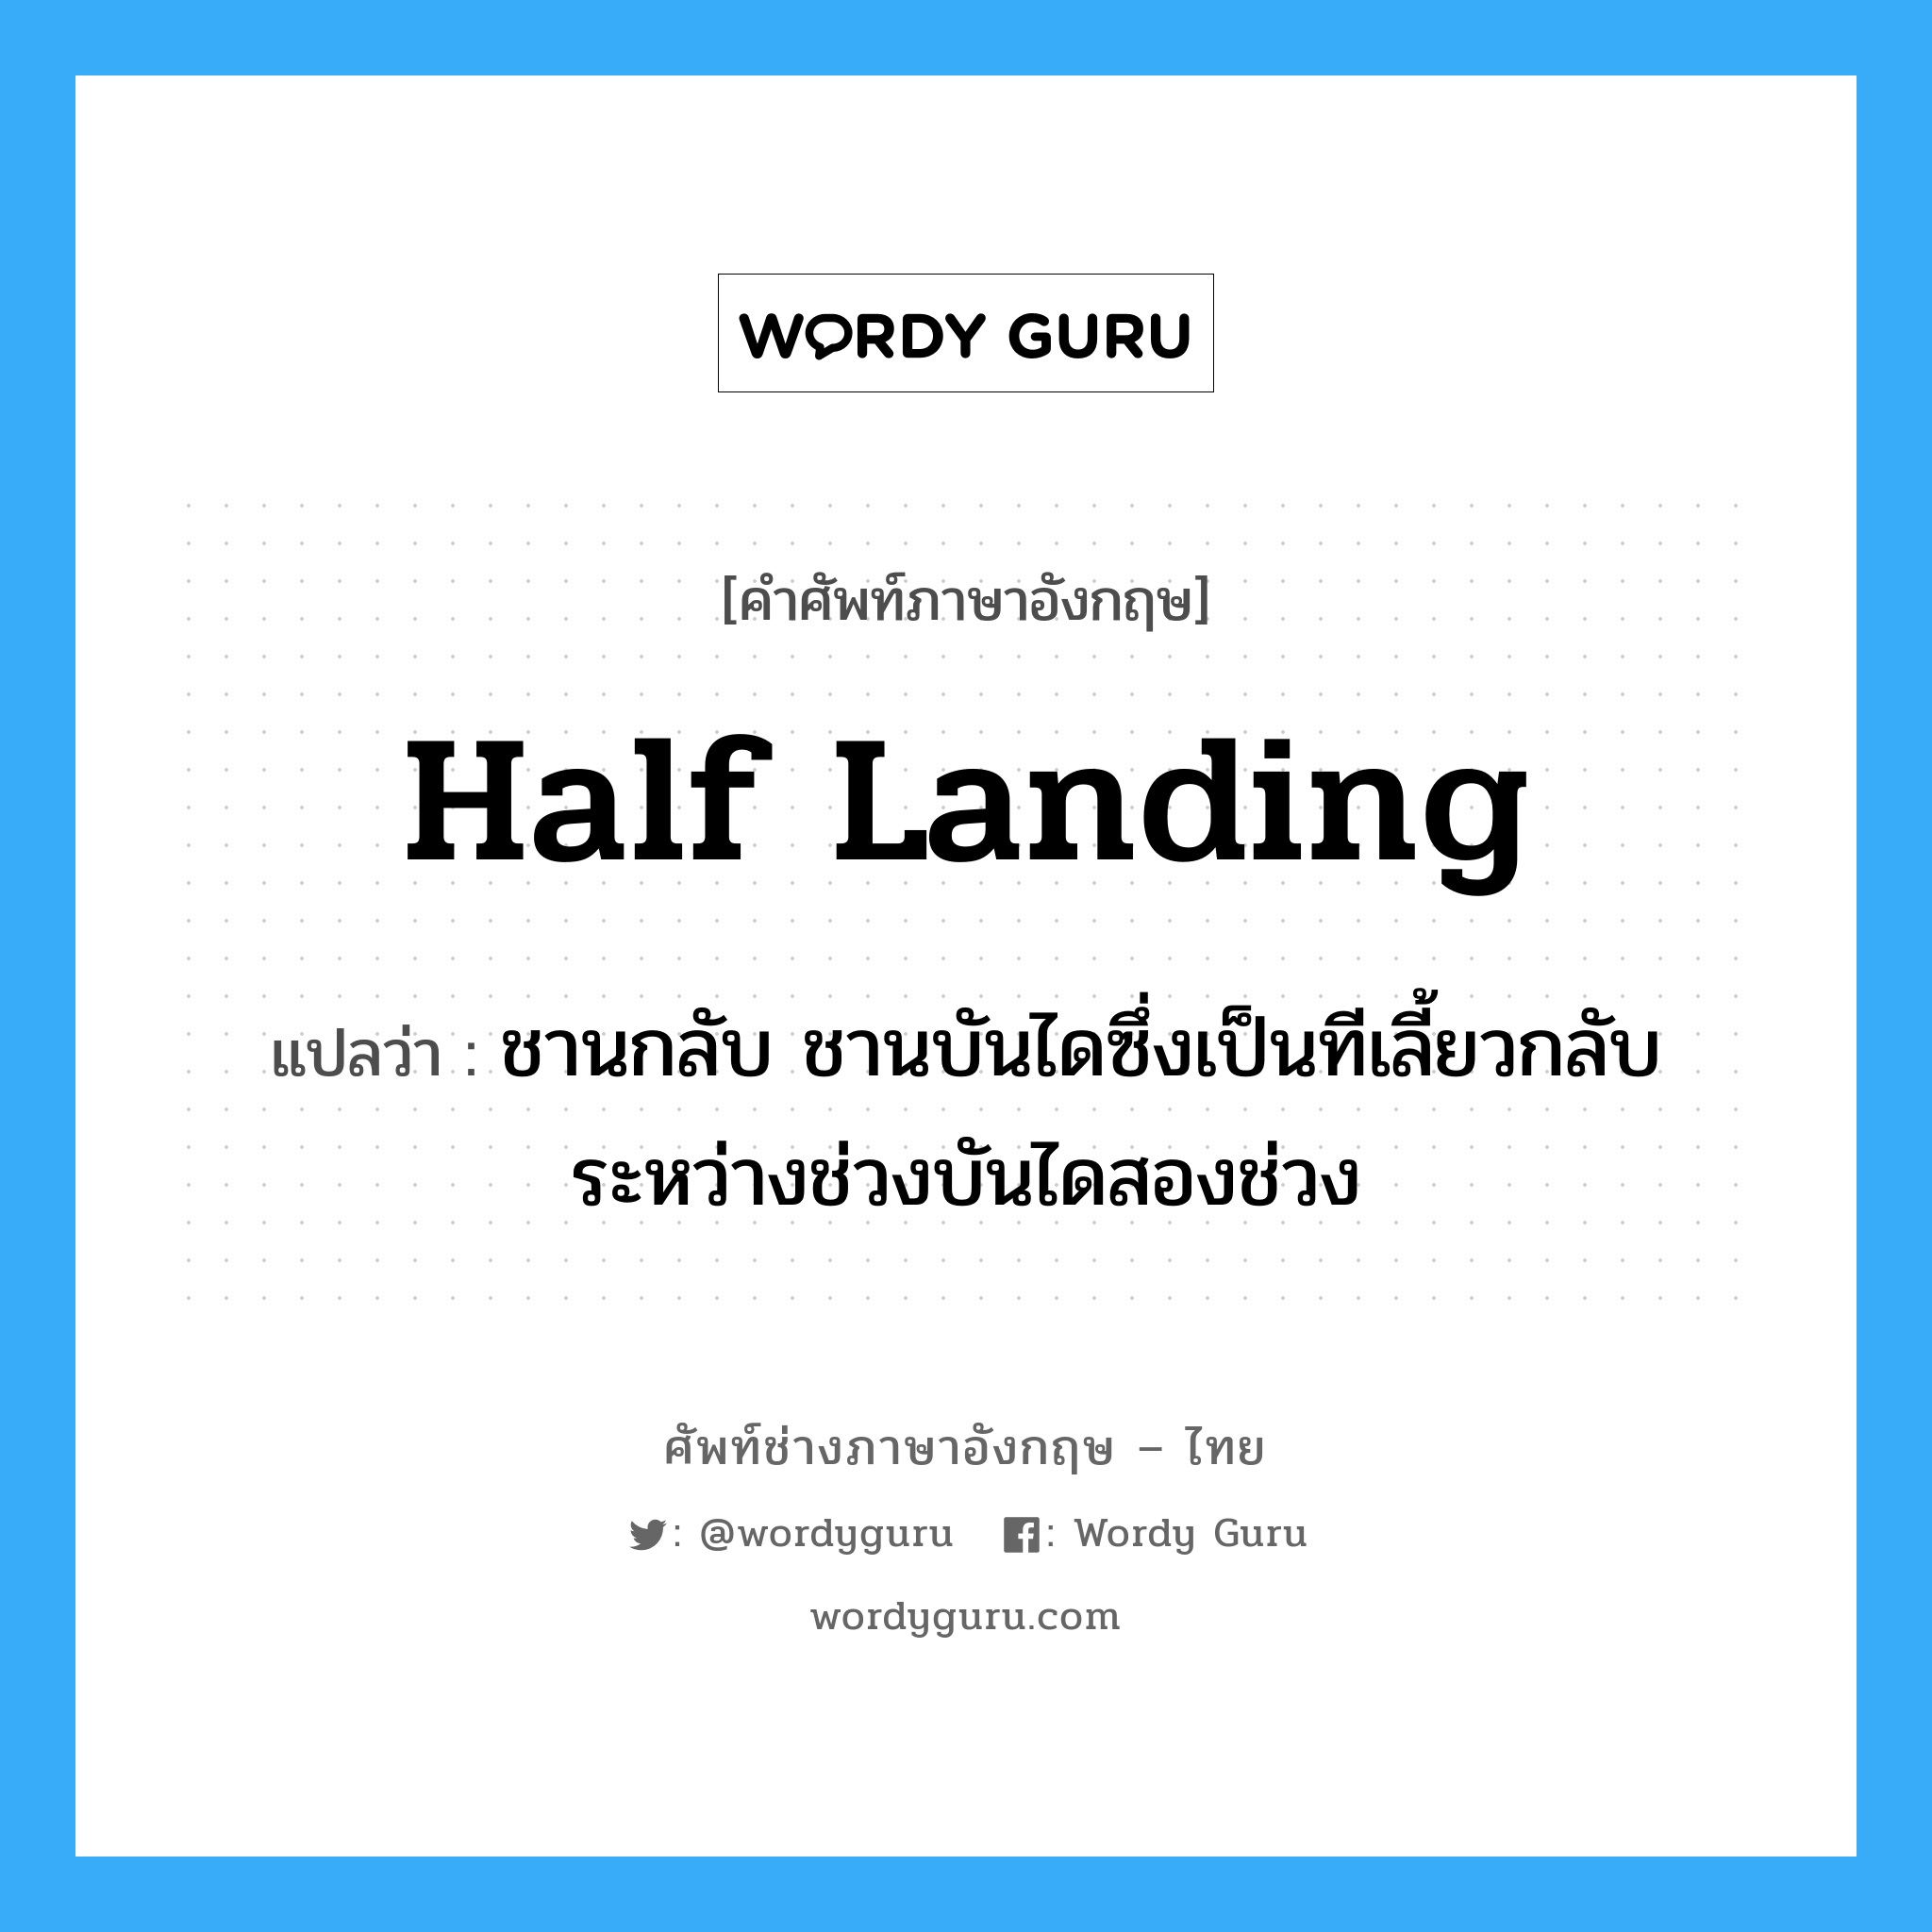 half landing แปลว่า?, คำศัพท์ช่างภาษาอังกฤษ - ไทย half landing คำศัพท์ภาษาอังกฤษ half landing แปลว่า ชานกลับ ชานบันไดซึ่งเป็นทีเลี้ยวกลับระหว่างช่วงบันไดสองช่วง